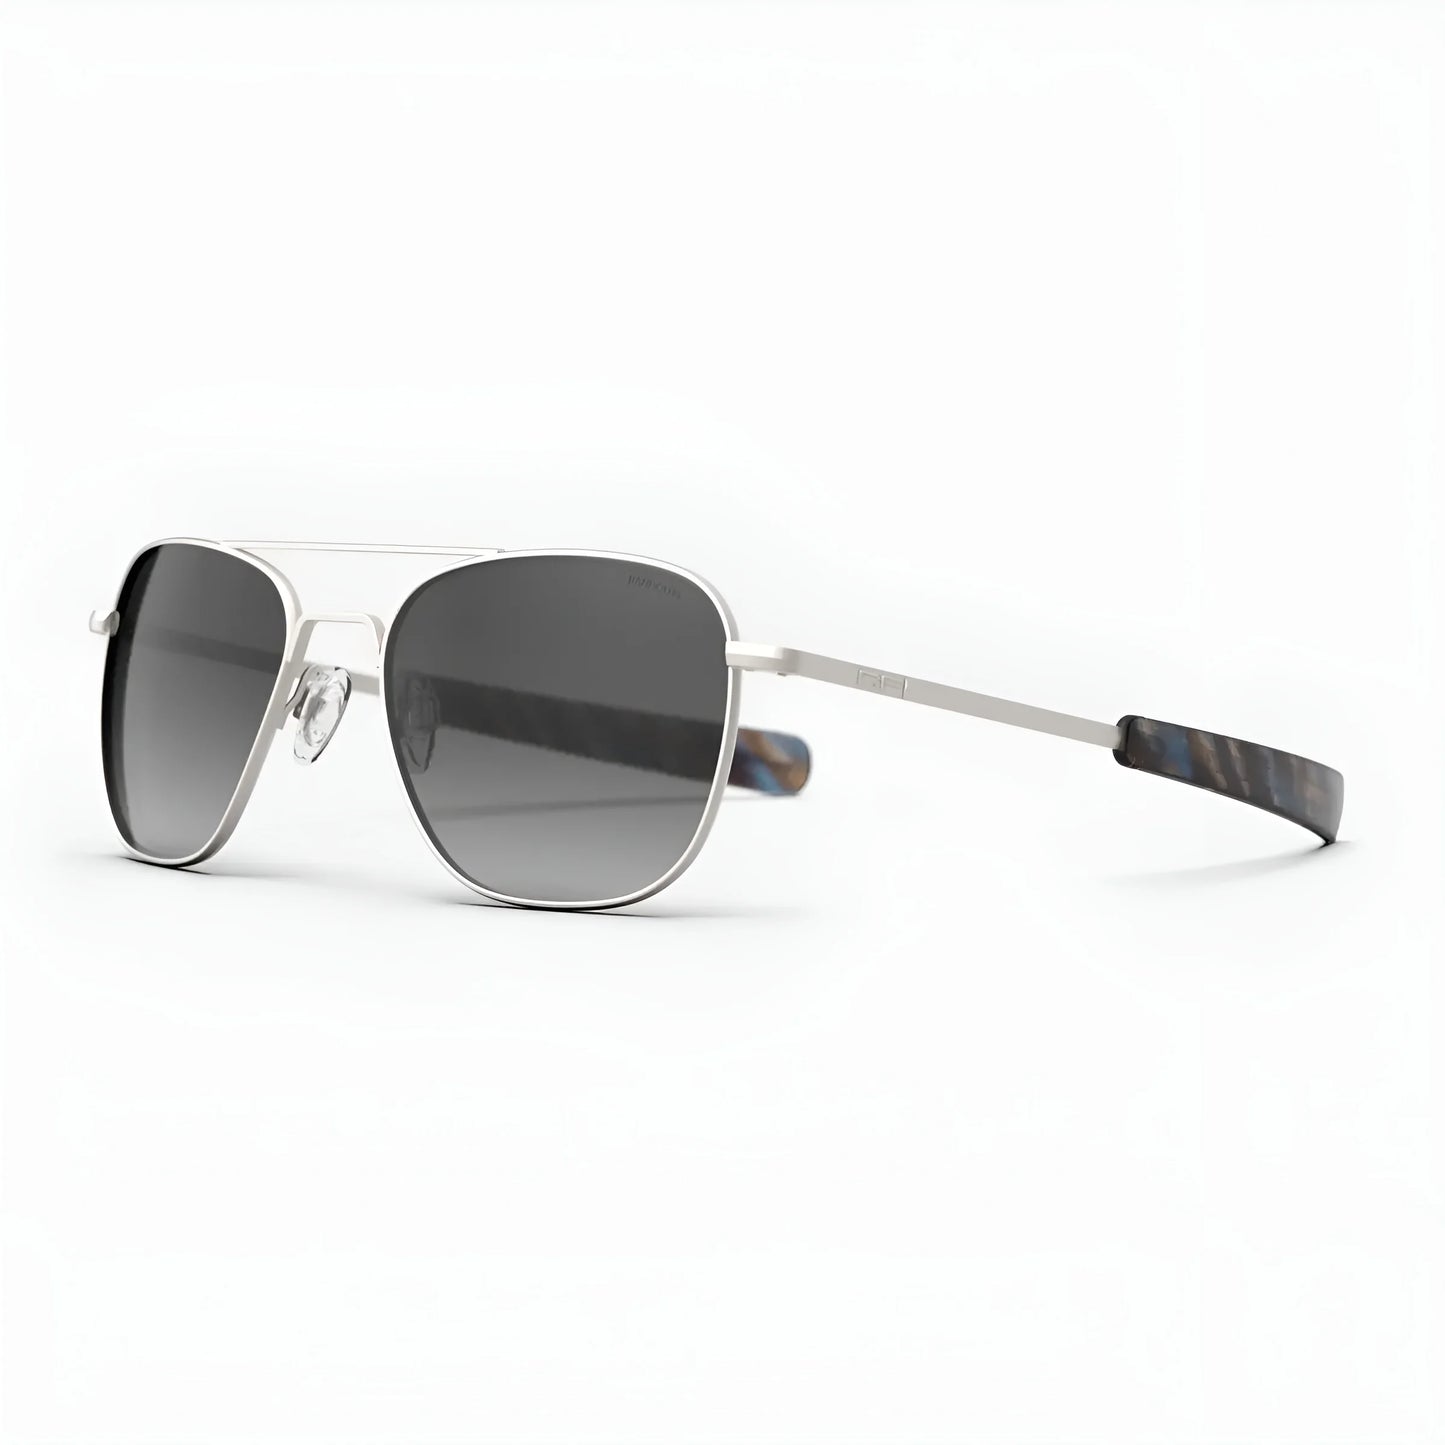 Randolph AVIATOR Sunglasses | Size 55 / Satin Silver / Coastal Gray Polarized Gradient Nylon